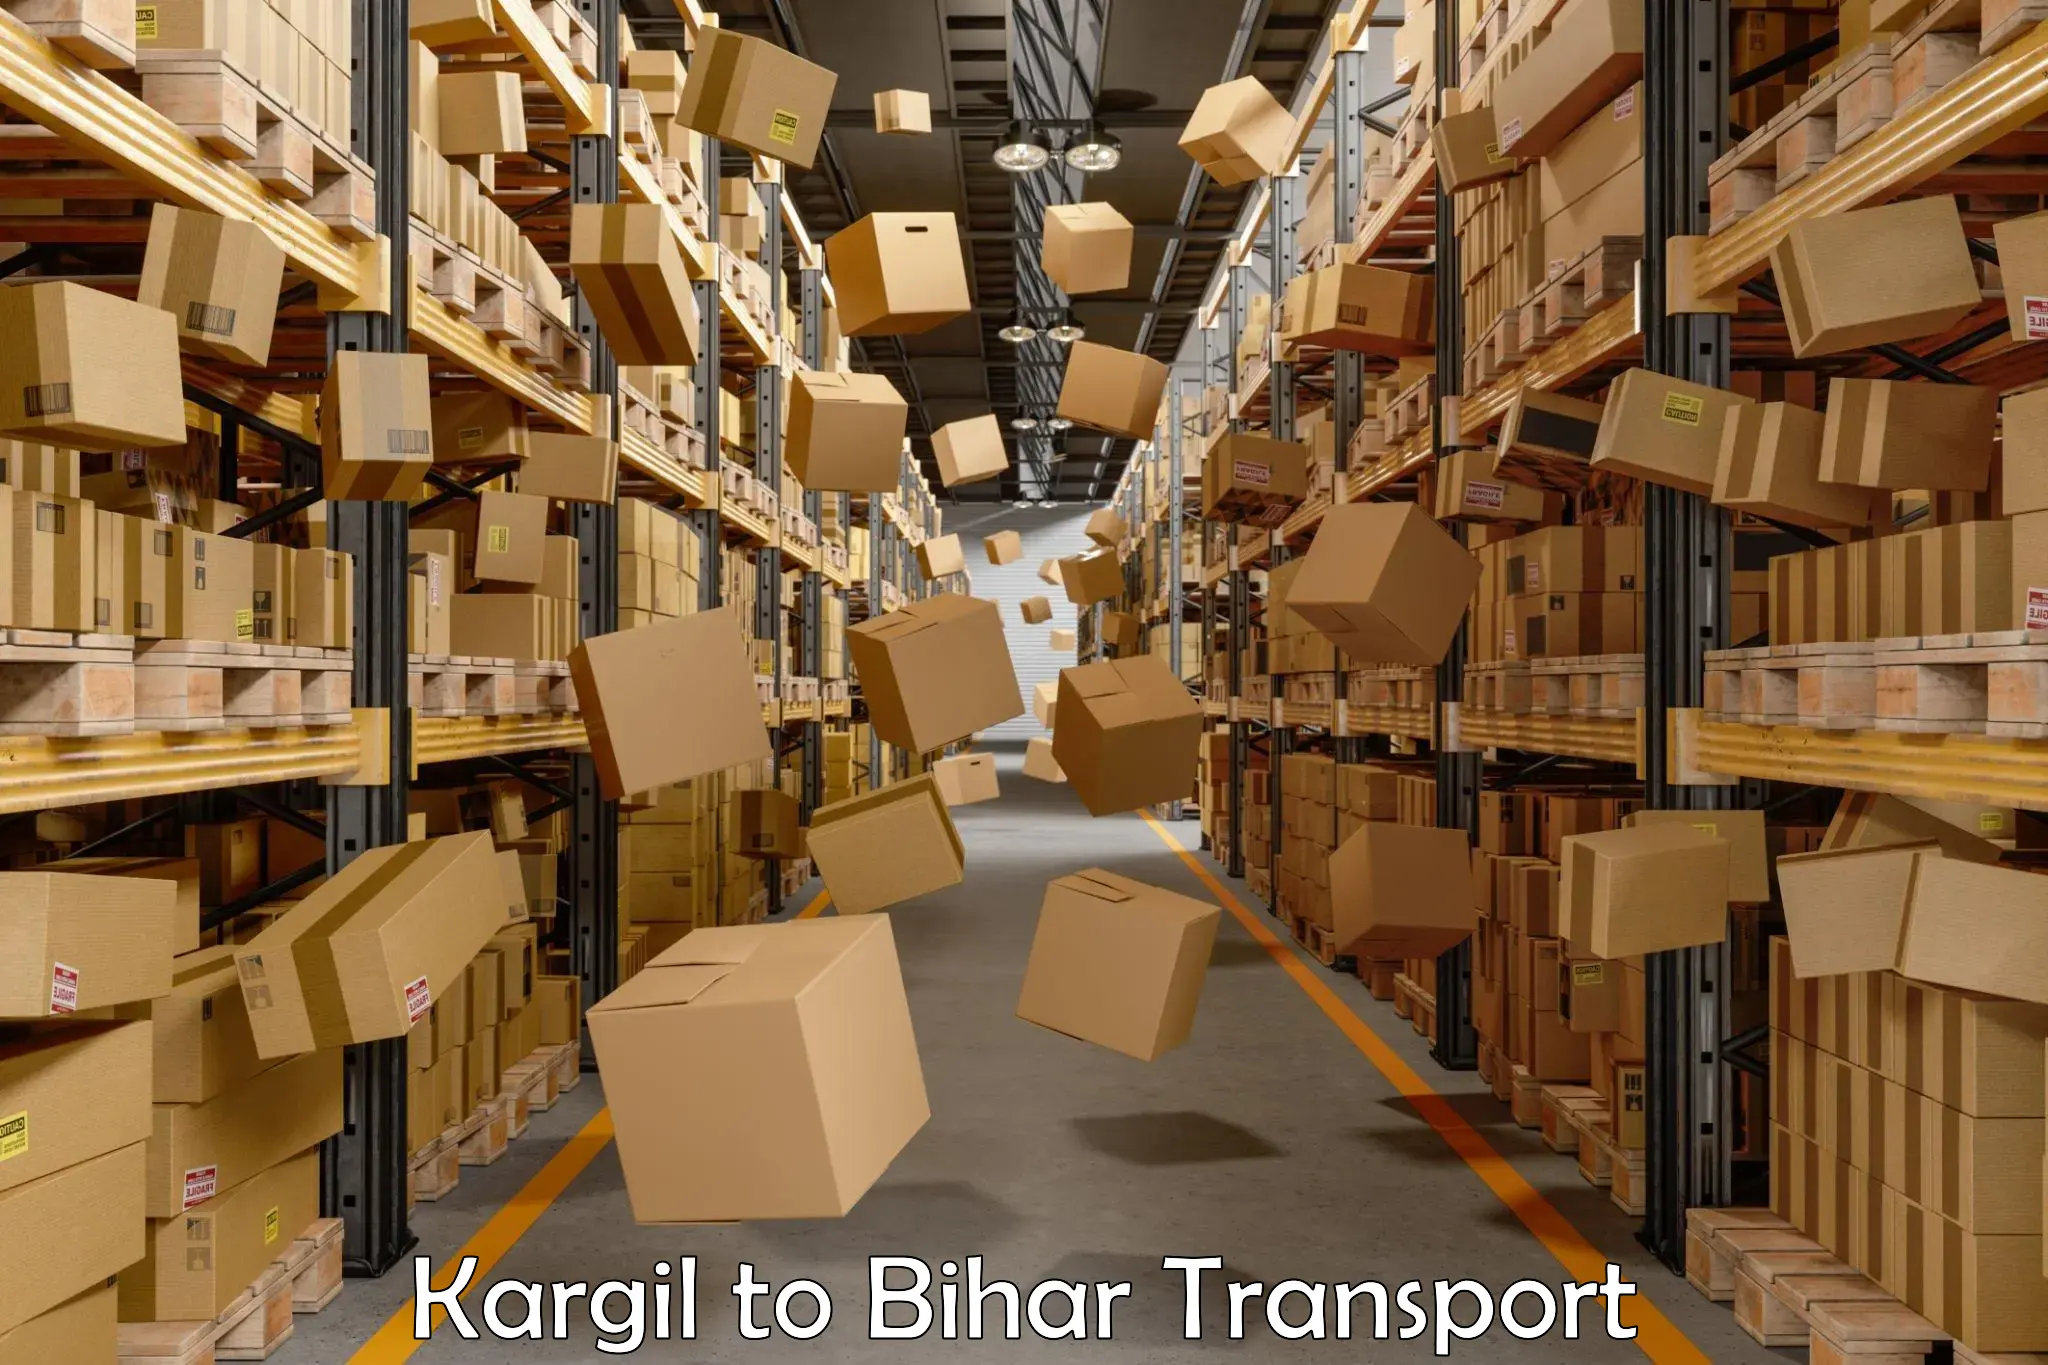 Domestic transport services Kargil to Mahnar Bazar